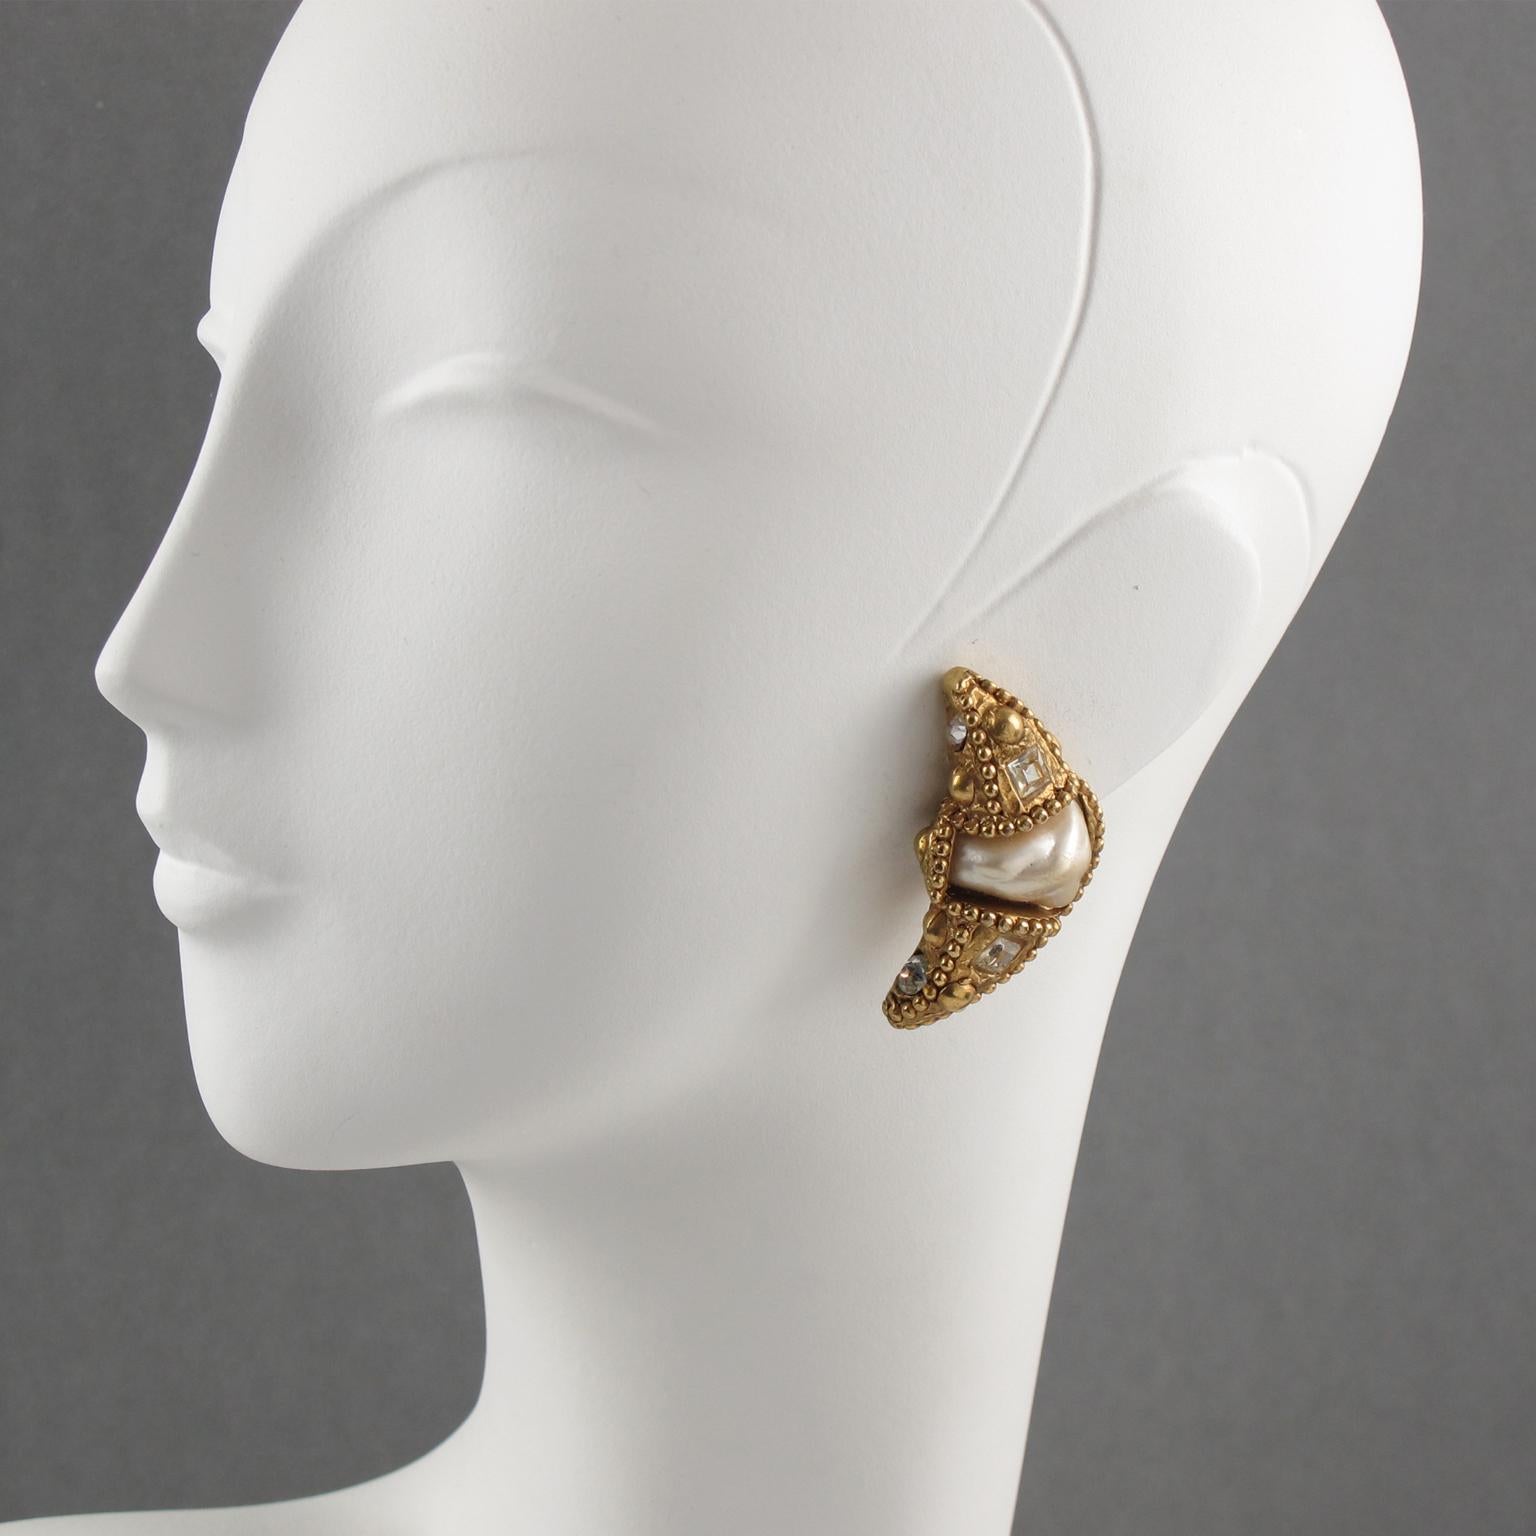 Schöne französische Designer Alexis Lahellec Paris signiert Clip-on Ohrringe. Die übergroße Sichel aus Harz mit vergoldetem Metallüberzug ist mit einer großen Perlenimitation versehen und wird von klaren Strasssteinen ergänzt. Signiert auf der